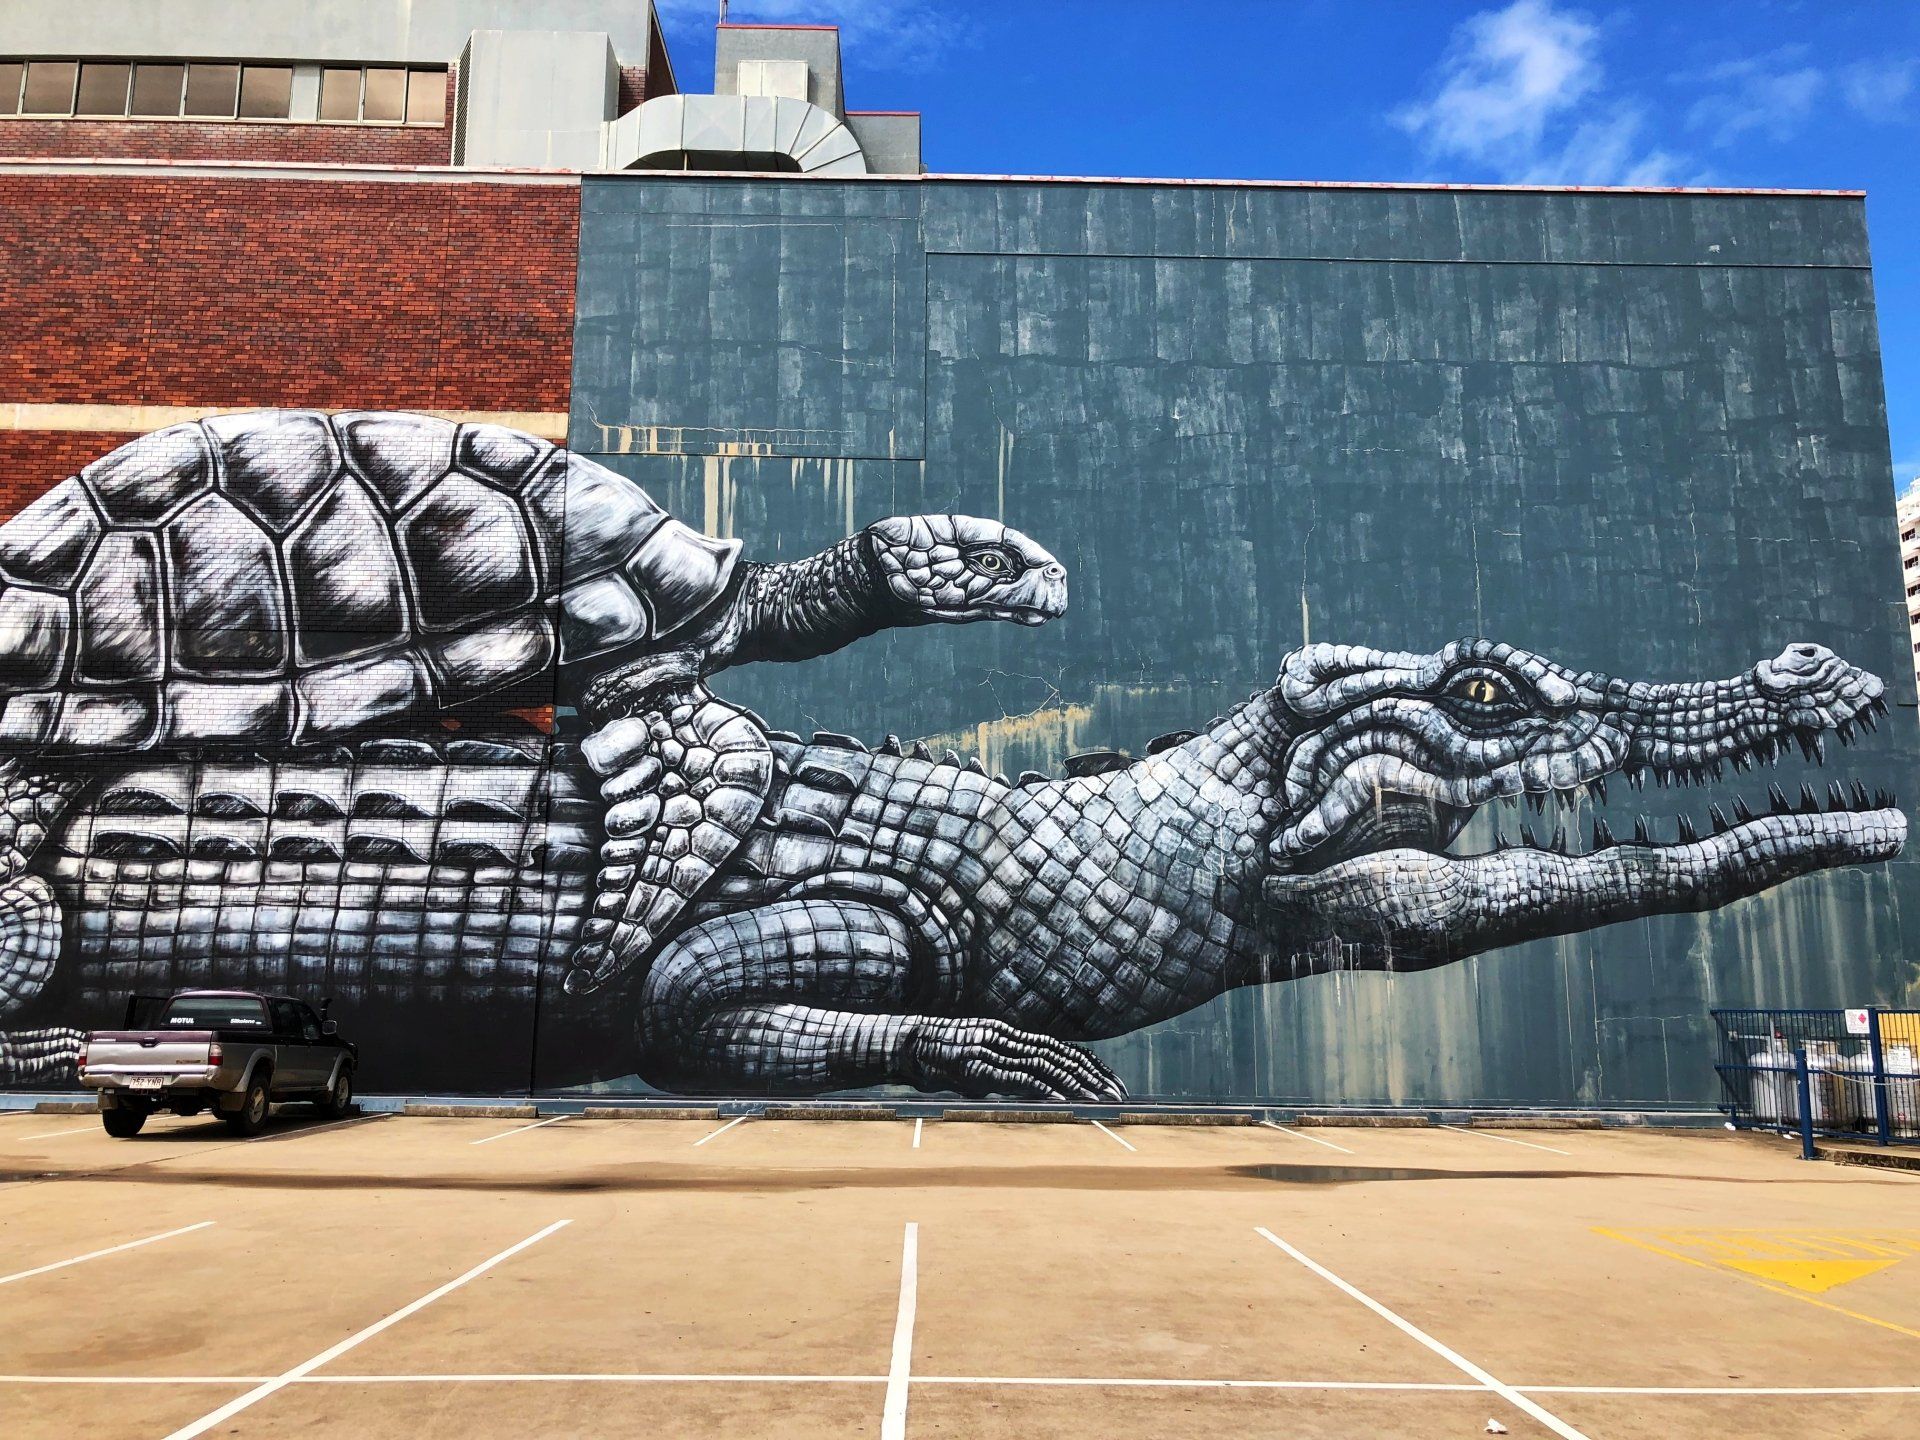 Townsville Street Art, Australian Silo Art Trail